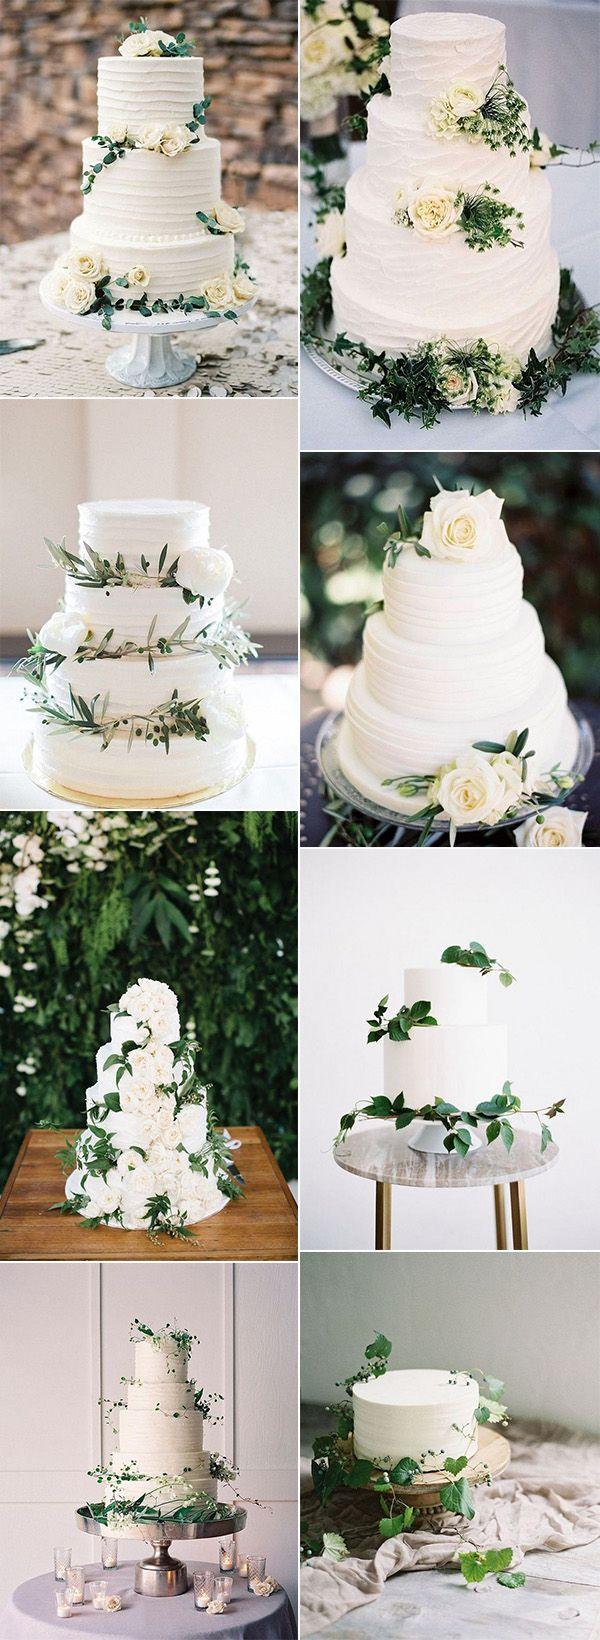 Wedding - 15 Amazing White And Green Elegant Wedding Cakes